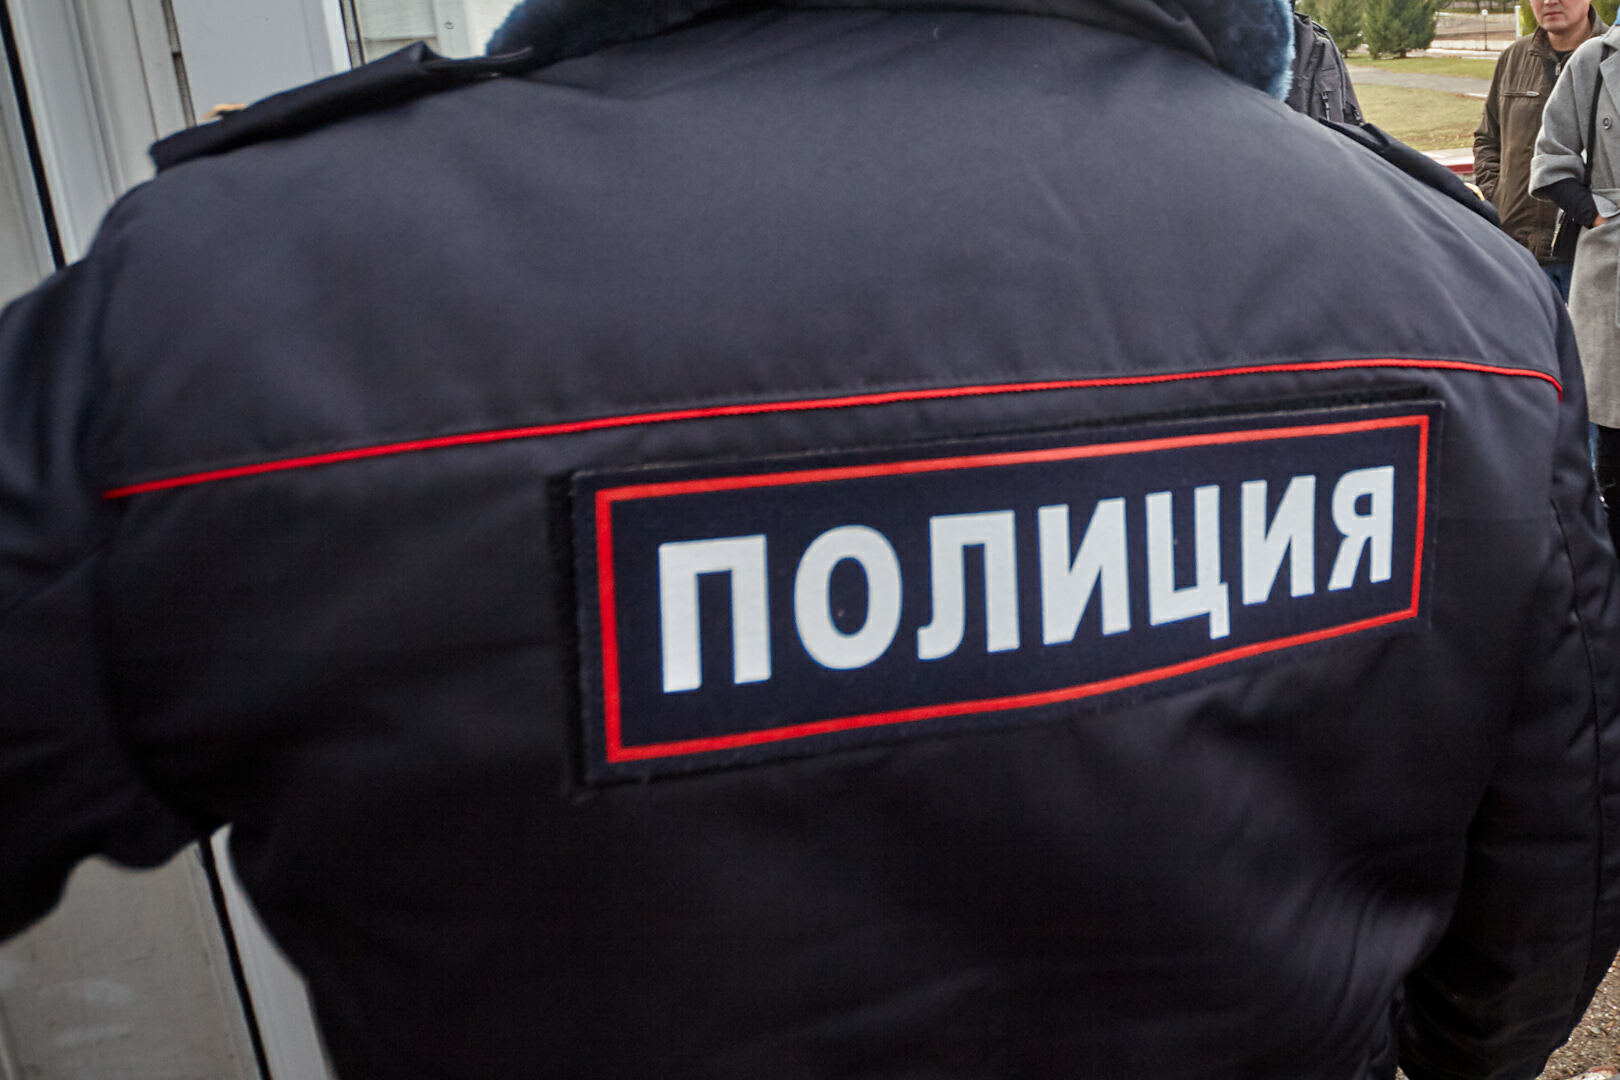 Безработного жителя Югорска оштрафовали за дискредитацию ВС России